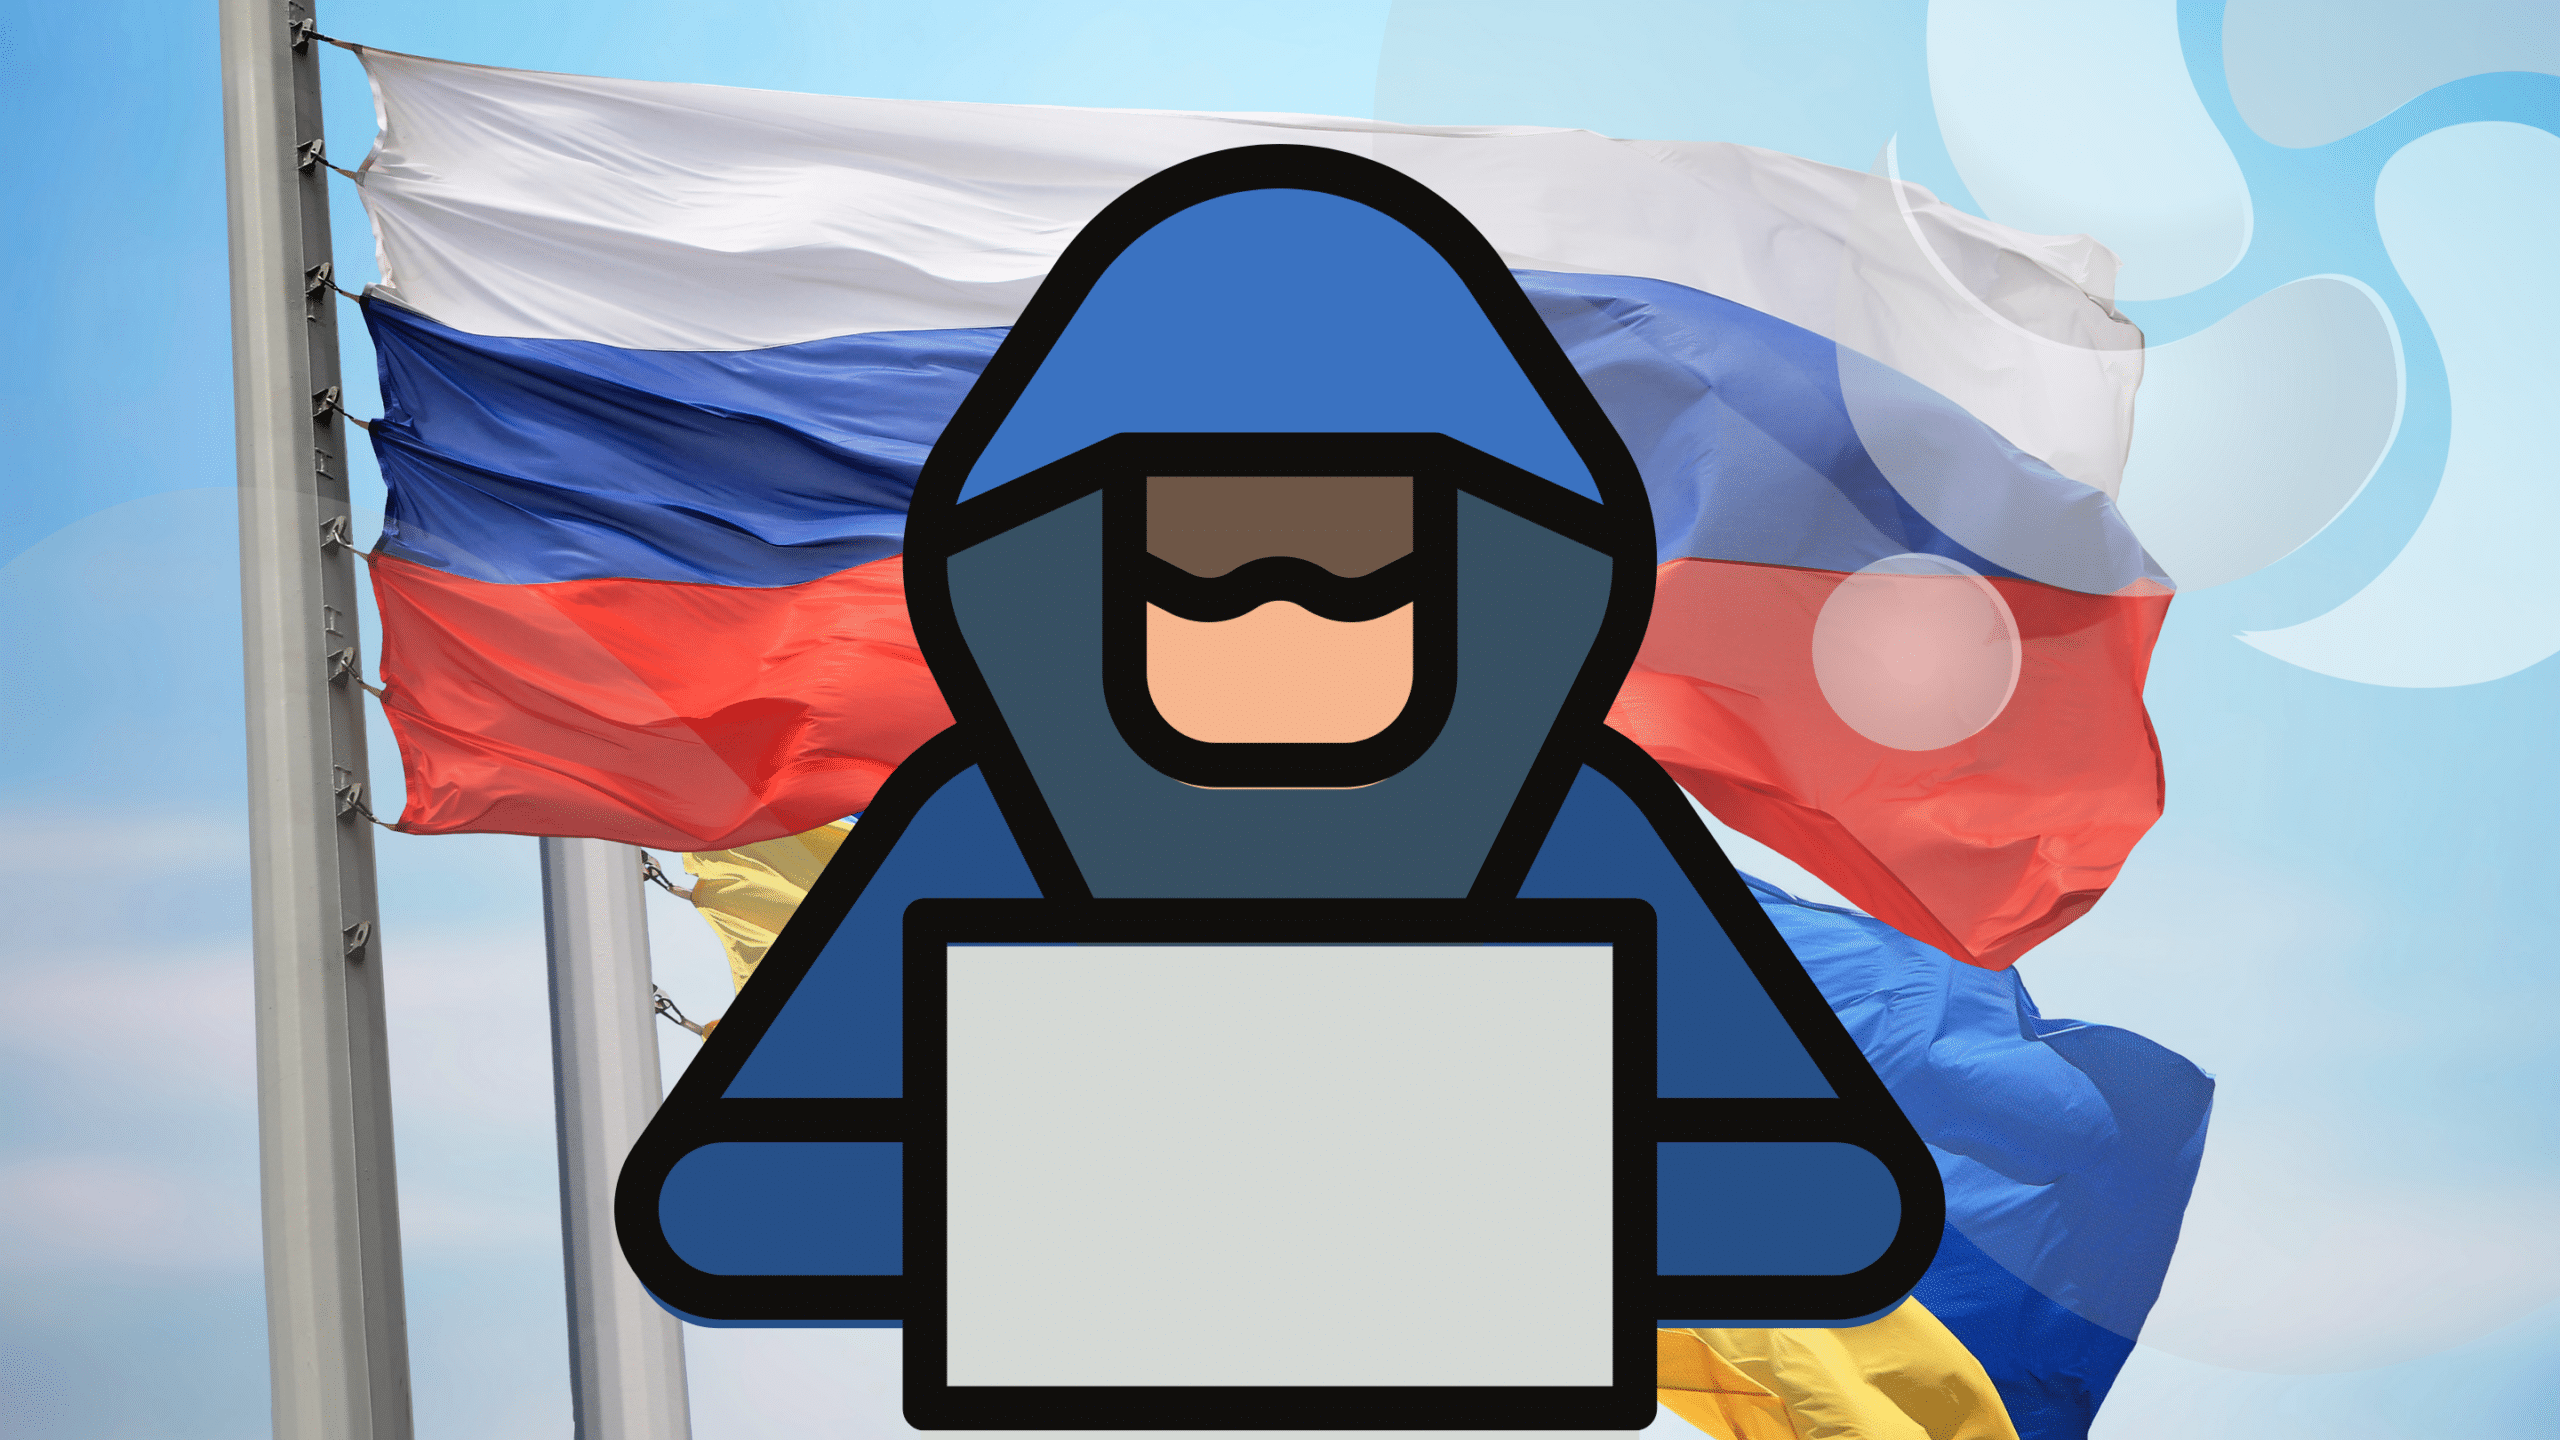 documentos-com-temas-da-russia-e-ucrania-pode-atrair-vitimas-para-espionagem-cibernetica